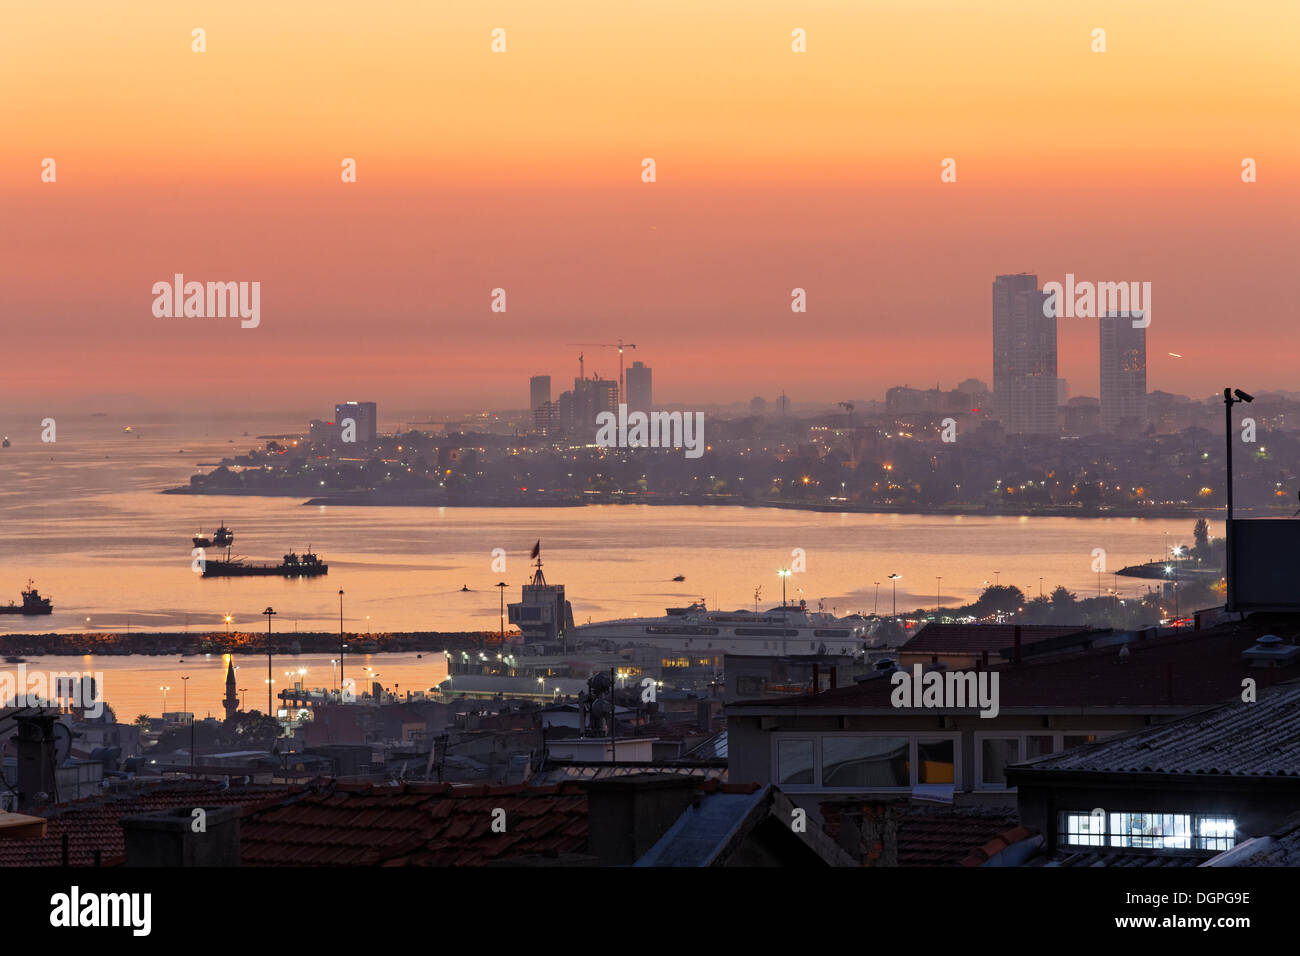 Abend Stimmung am Ufer des Marmarameers, Blick vom alten Stadt Sultanahmet, Istanbul, Türkei, Europa Stockfoto